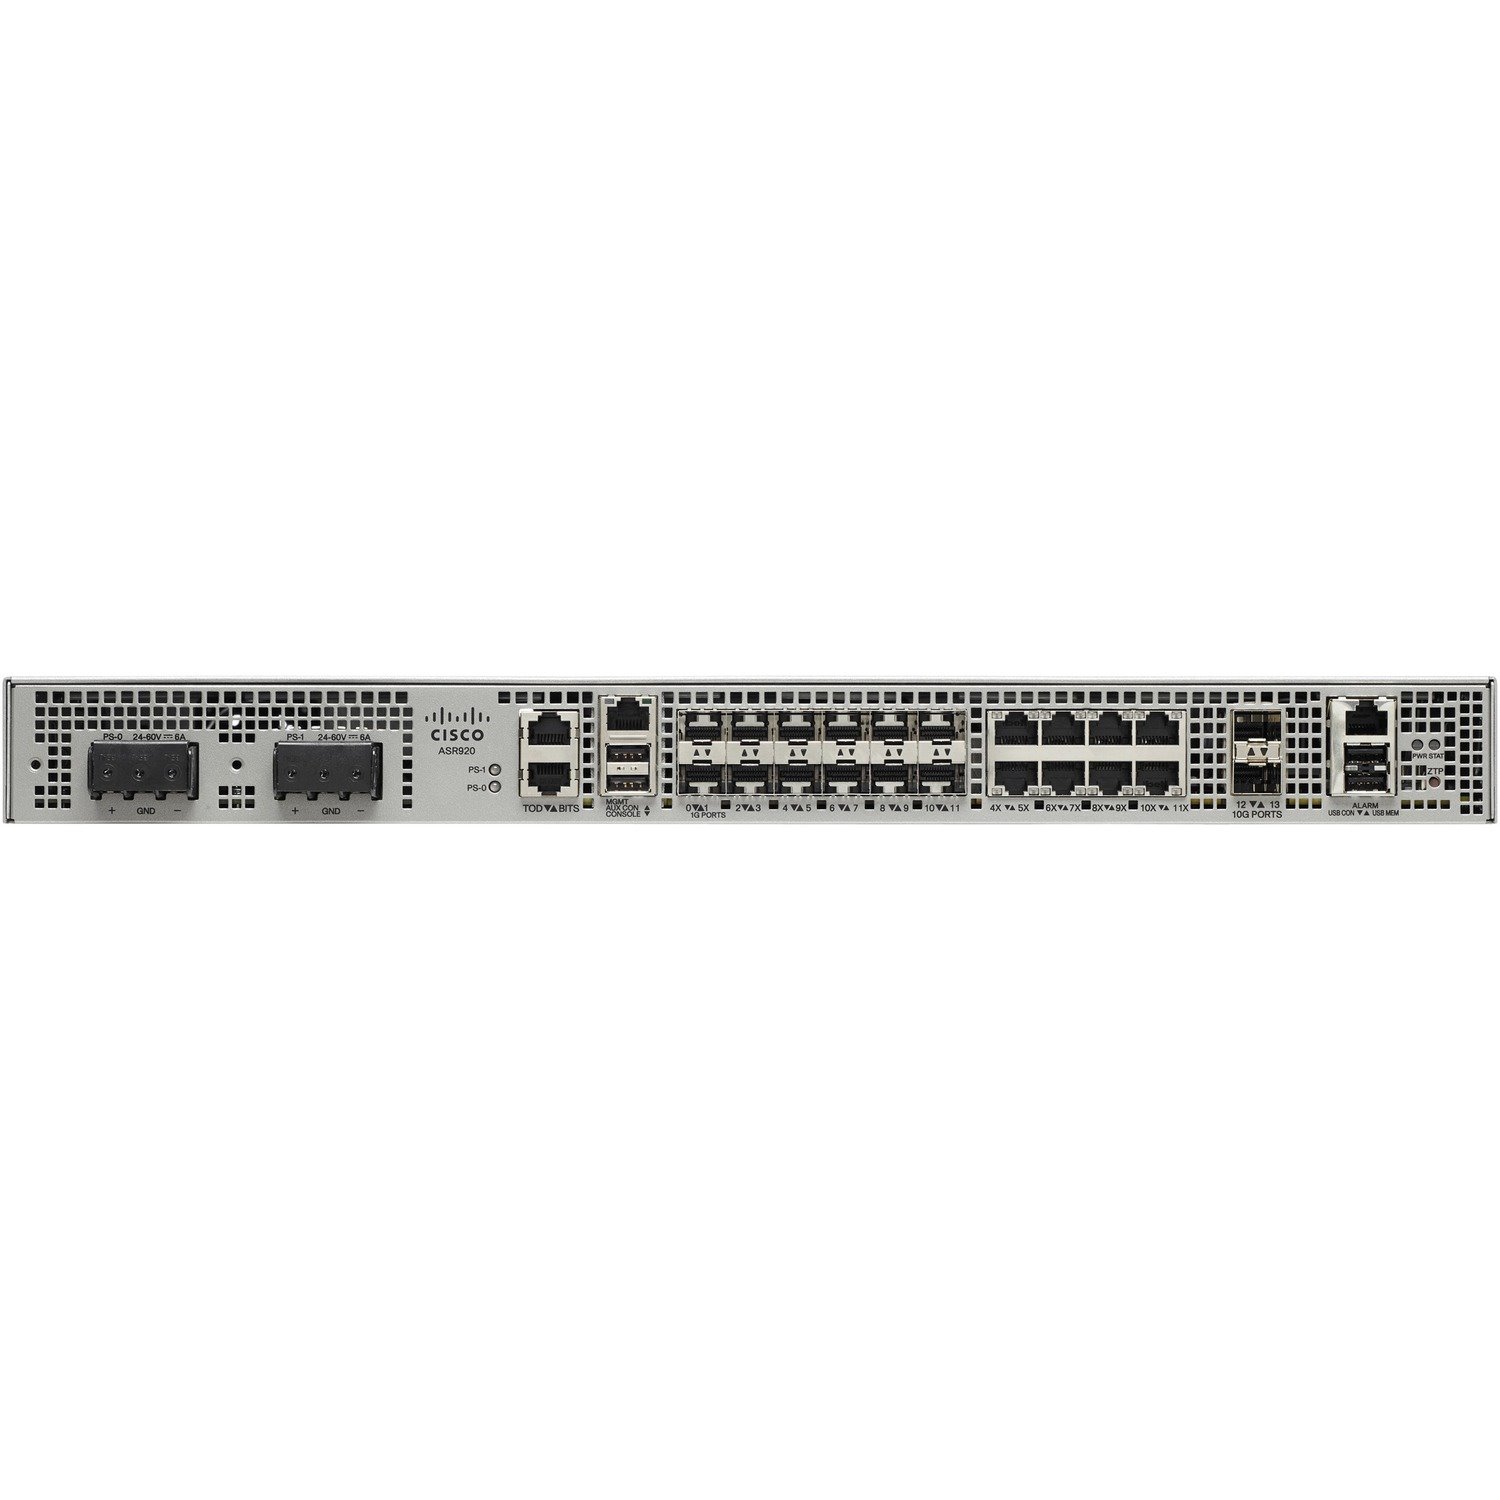 Cisco ASR 920 ASR-920-12CZ-D Router - Refurbished